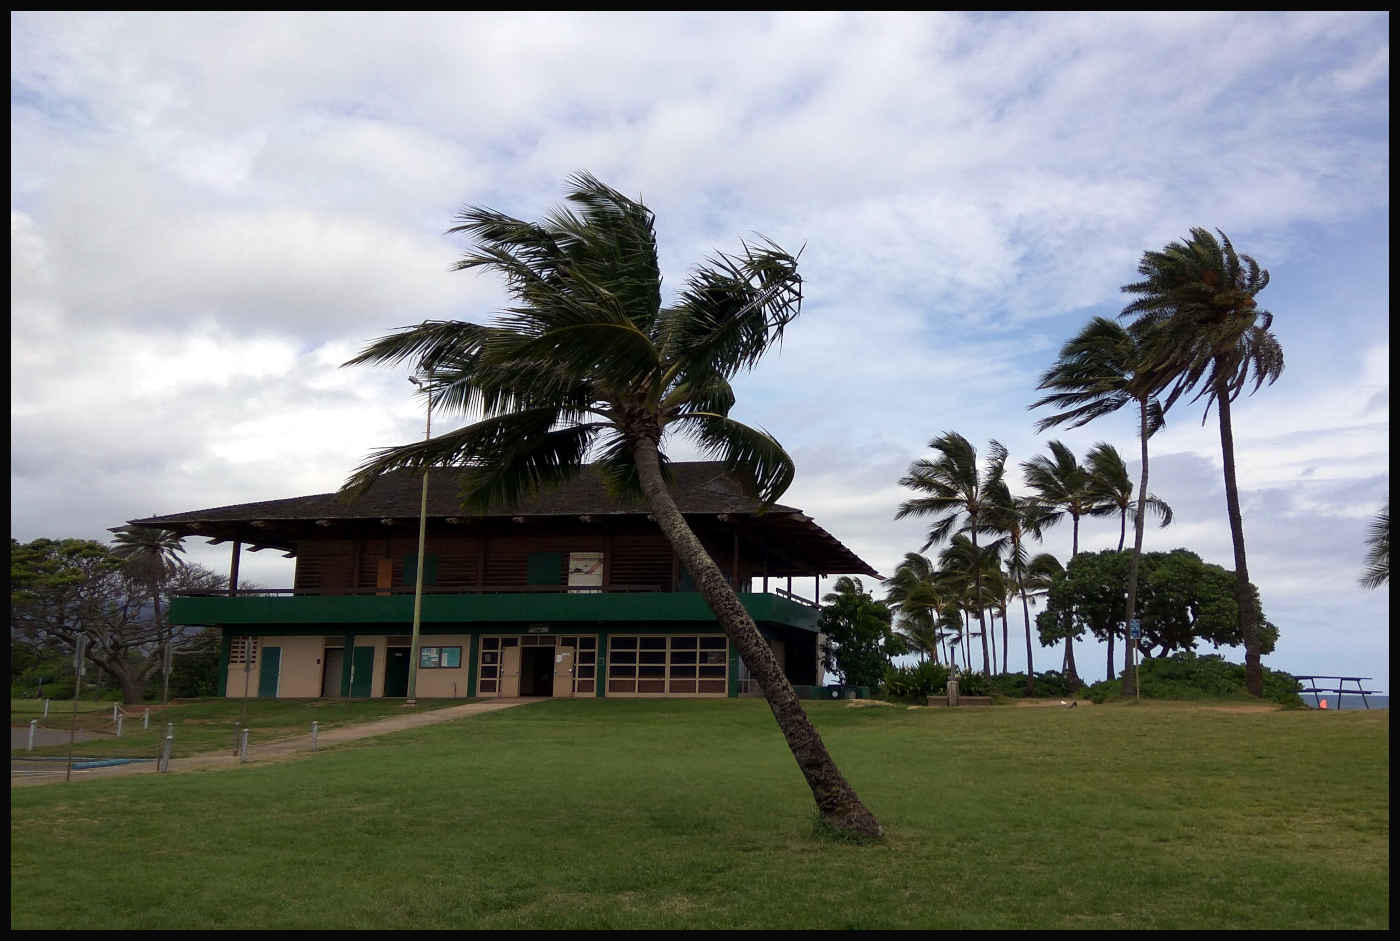 Haleʻiwa Aliʻi Beach Park